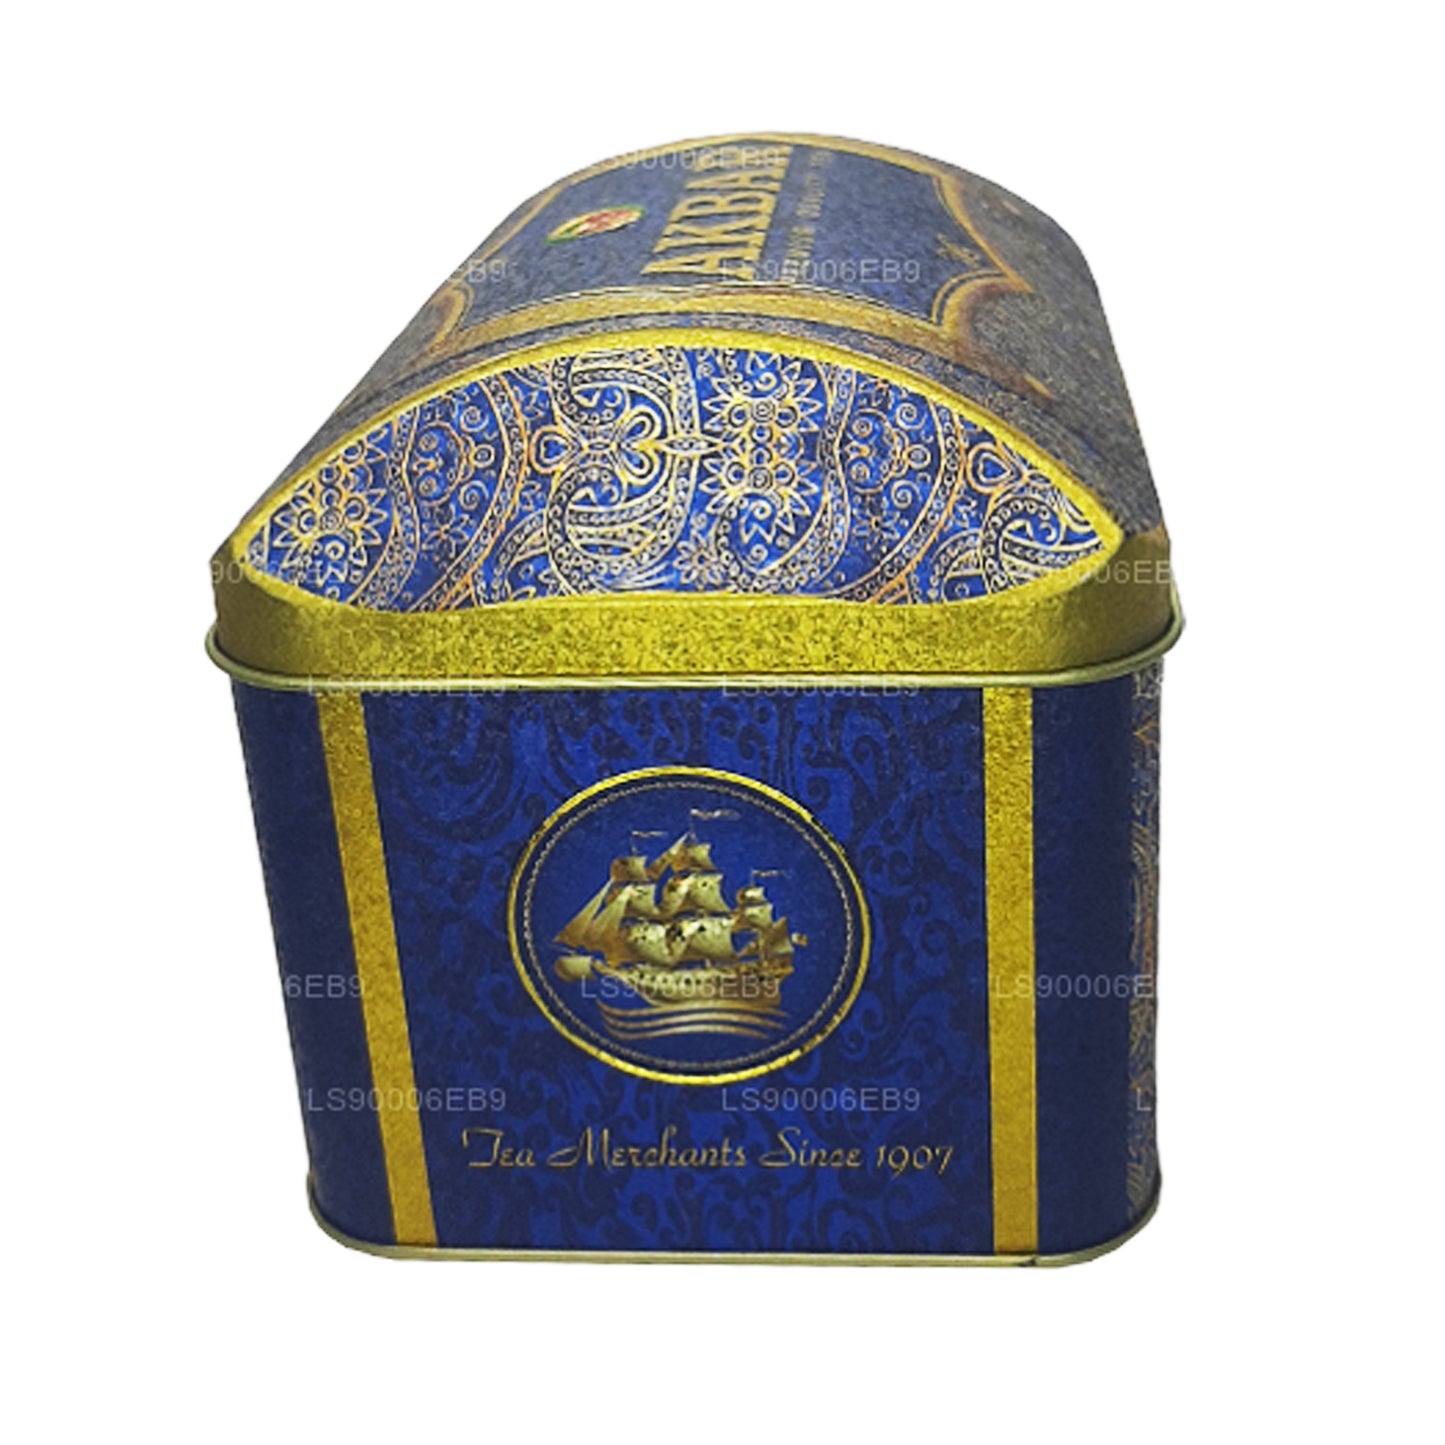 Oriental Mystery Treasure Box uit de exclusieve collectie van Akbar (250